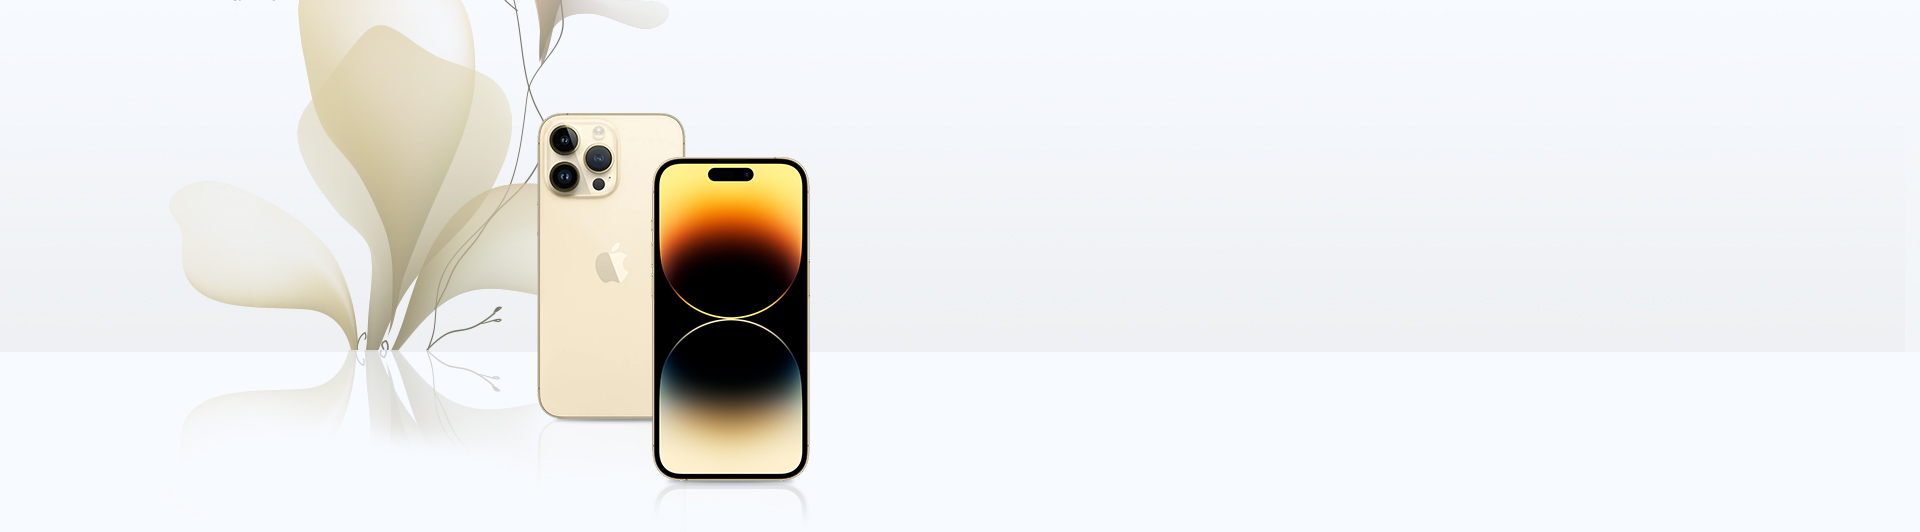 iPhone 14 Pro Max màu vàng có bộ nhớ 256GB giá bao nhiêu?
